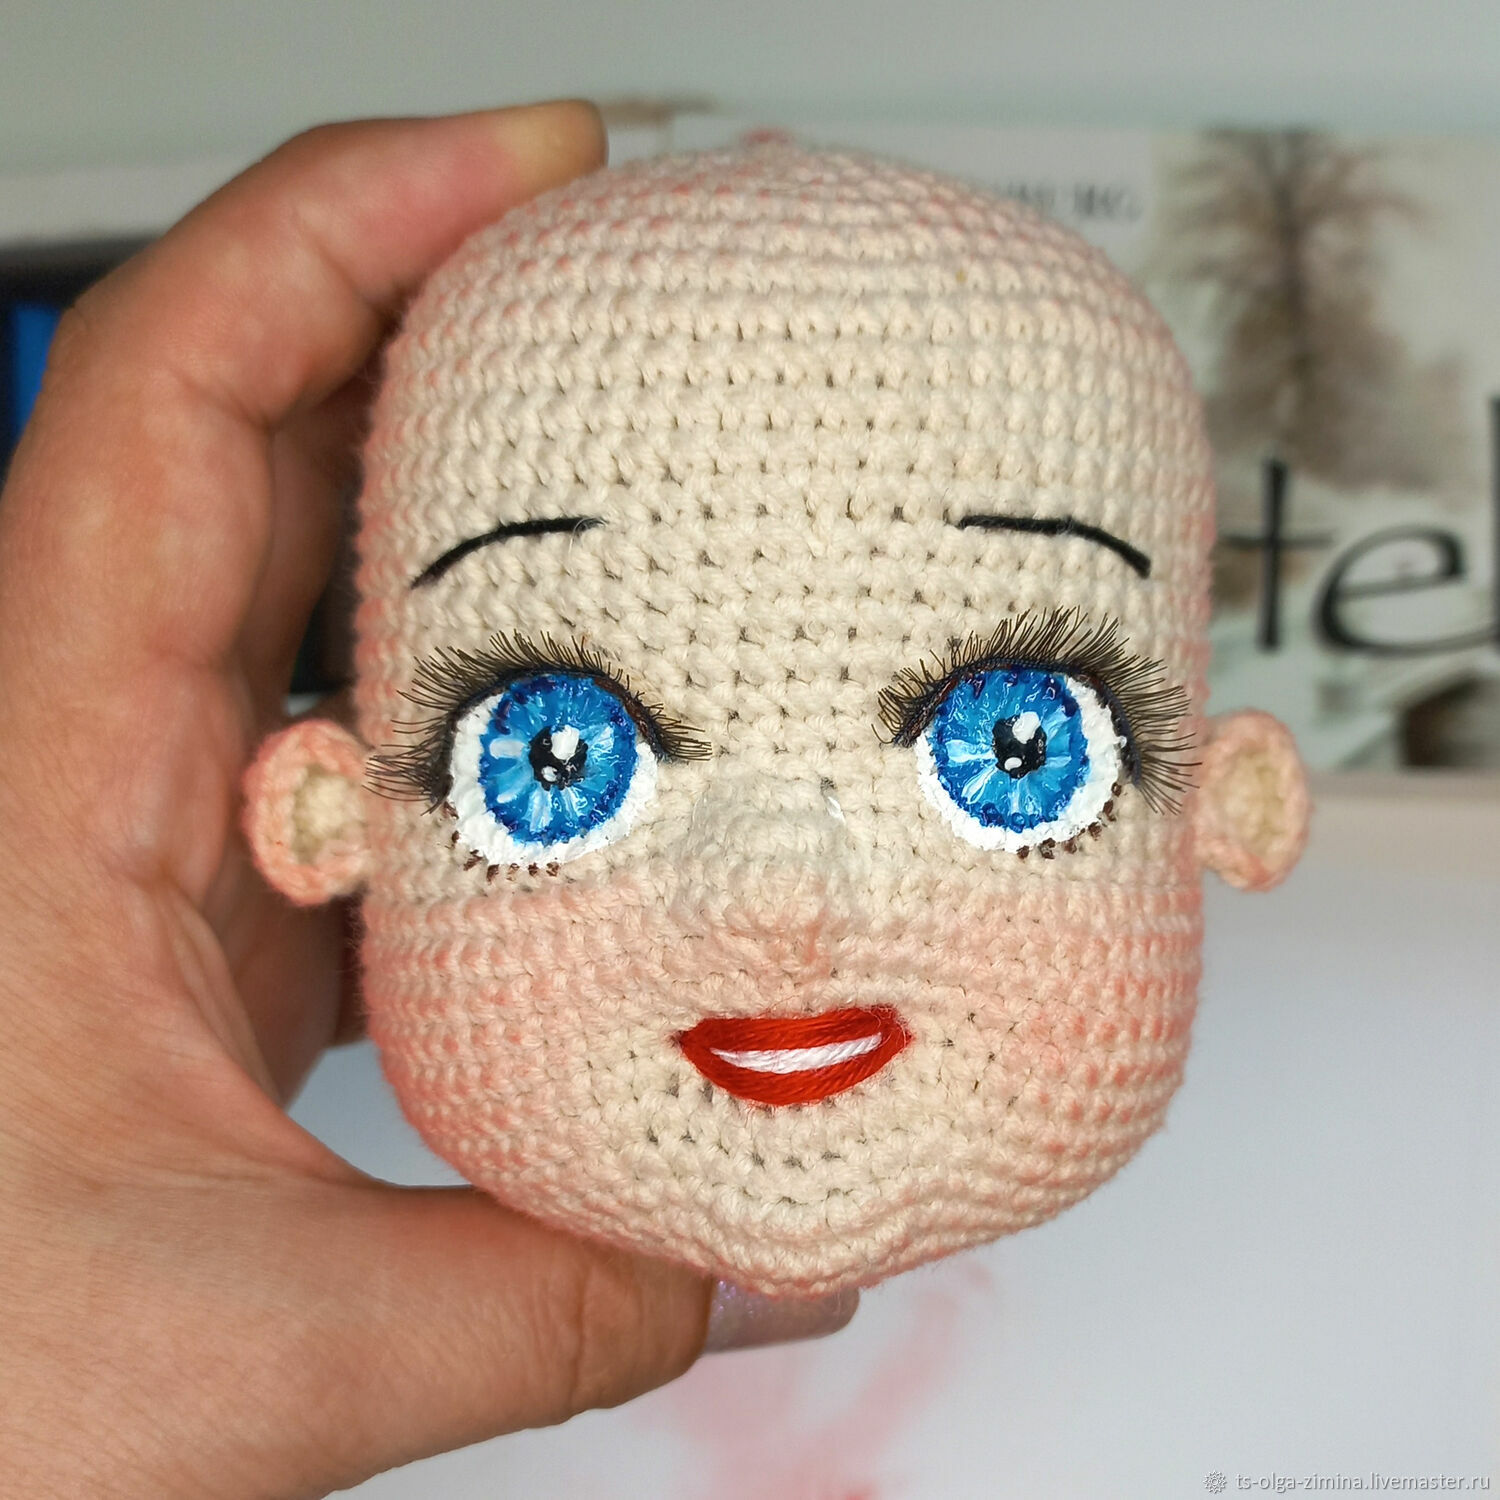 Вышиваем и рисуем кукле глаза | ВКонтакте